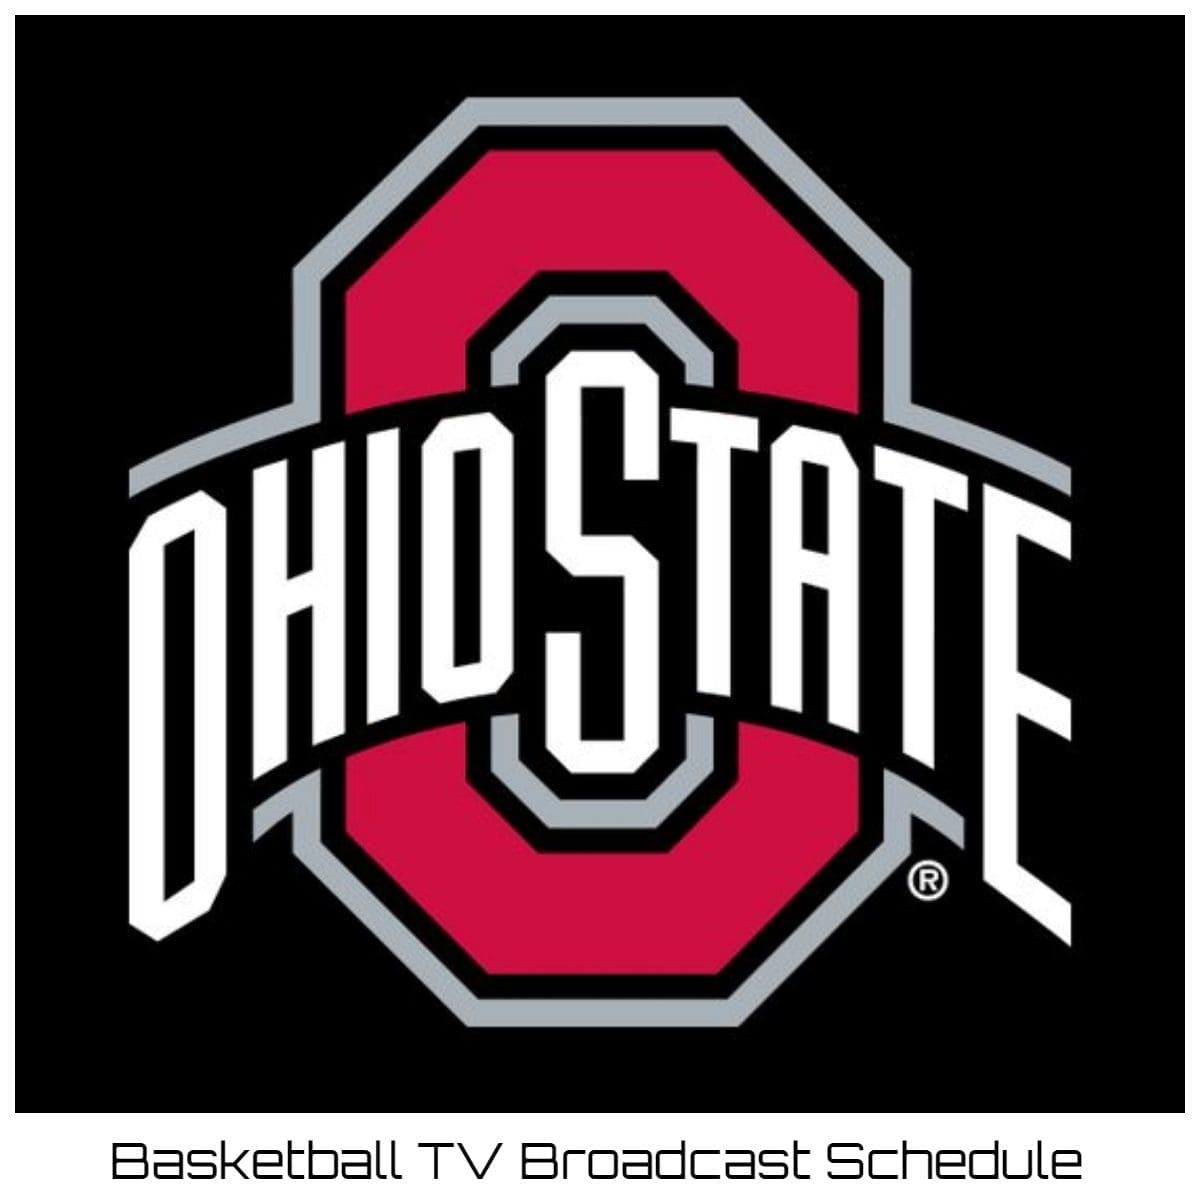 Ohio State Buckeyes Basketball TV Broadcast Schedule